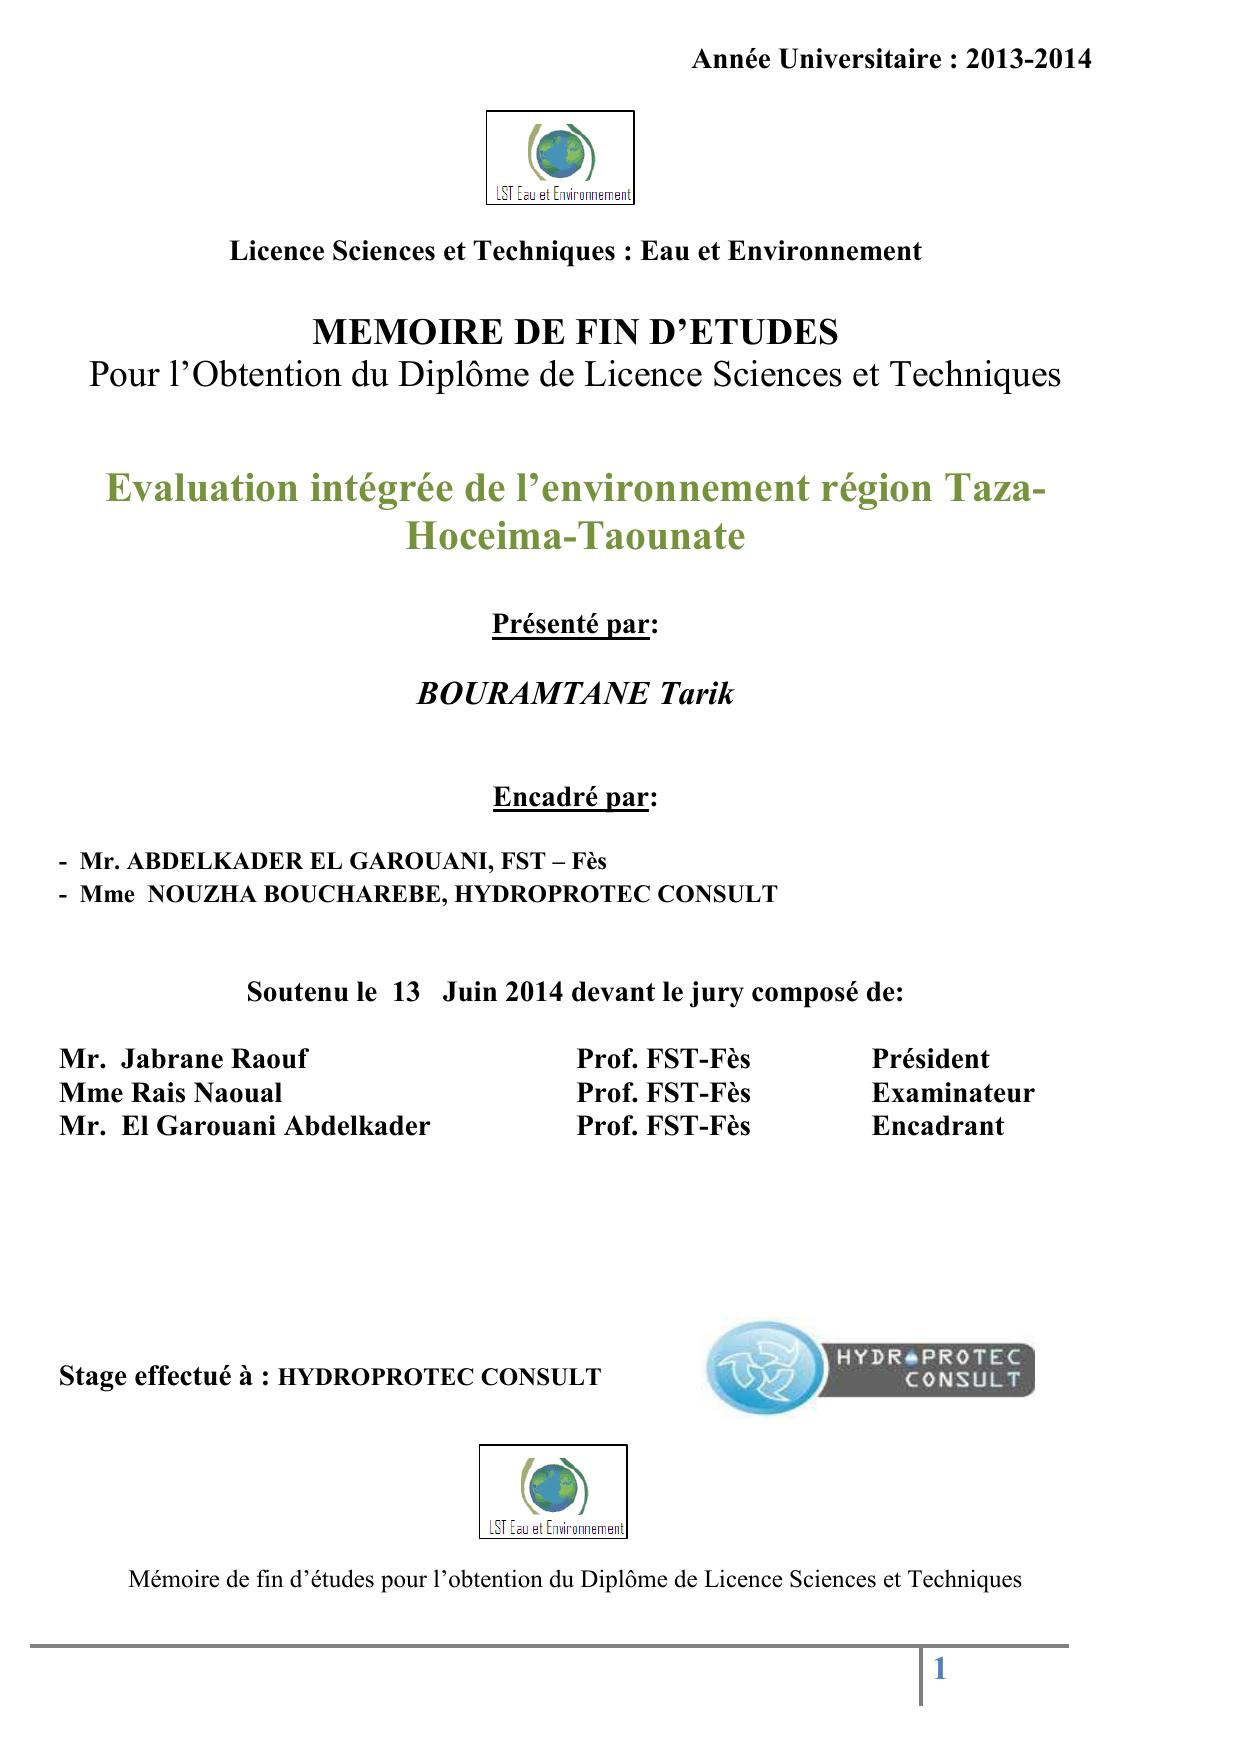 Evaluation intégrée de l’environnement région Taza- Hoceima-Taounate